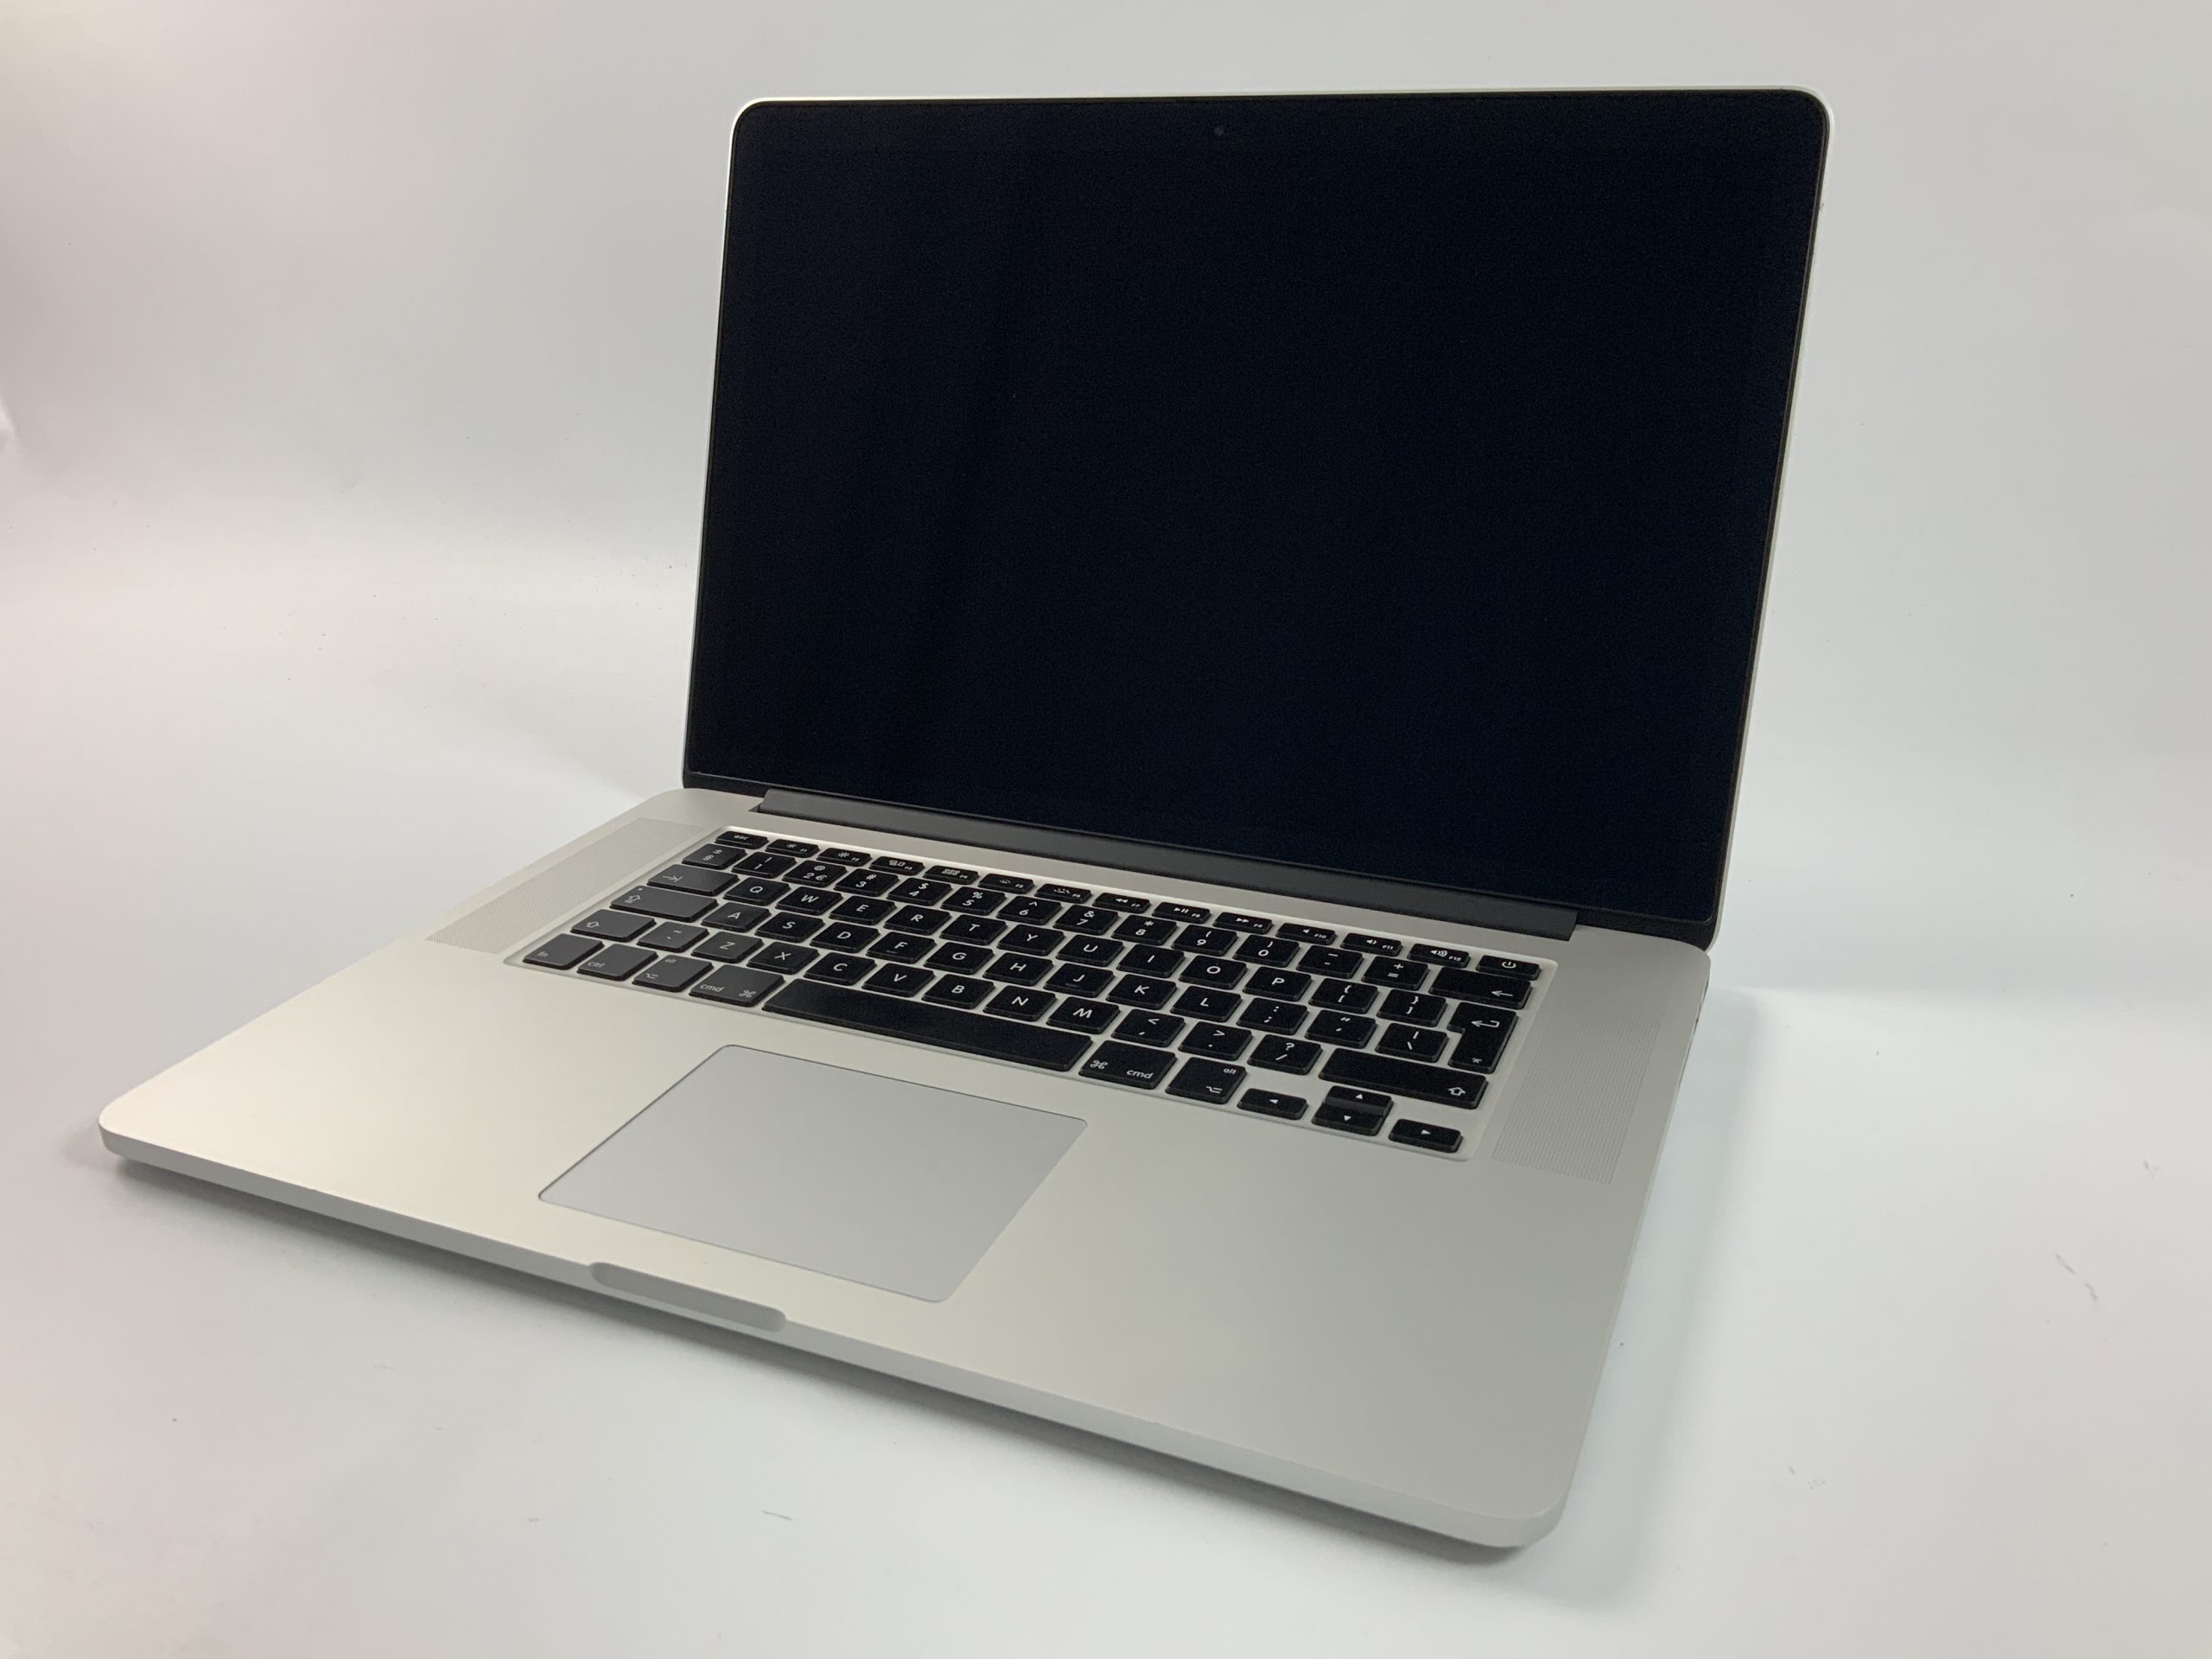 MacBook Pro Retina 15" Mid 2014 (Intel Quad-Core i7 2.5 GHz 16 GB RAM 512 GB SSD), Intel Quad-Core i7 2.5 GHz, 16 GB RAM, 512 GB SSD, obraz 1